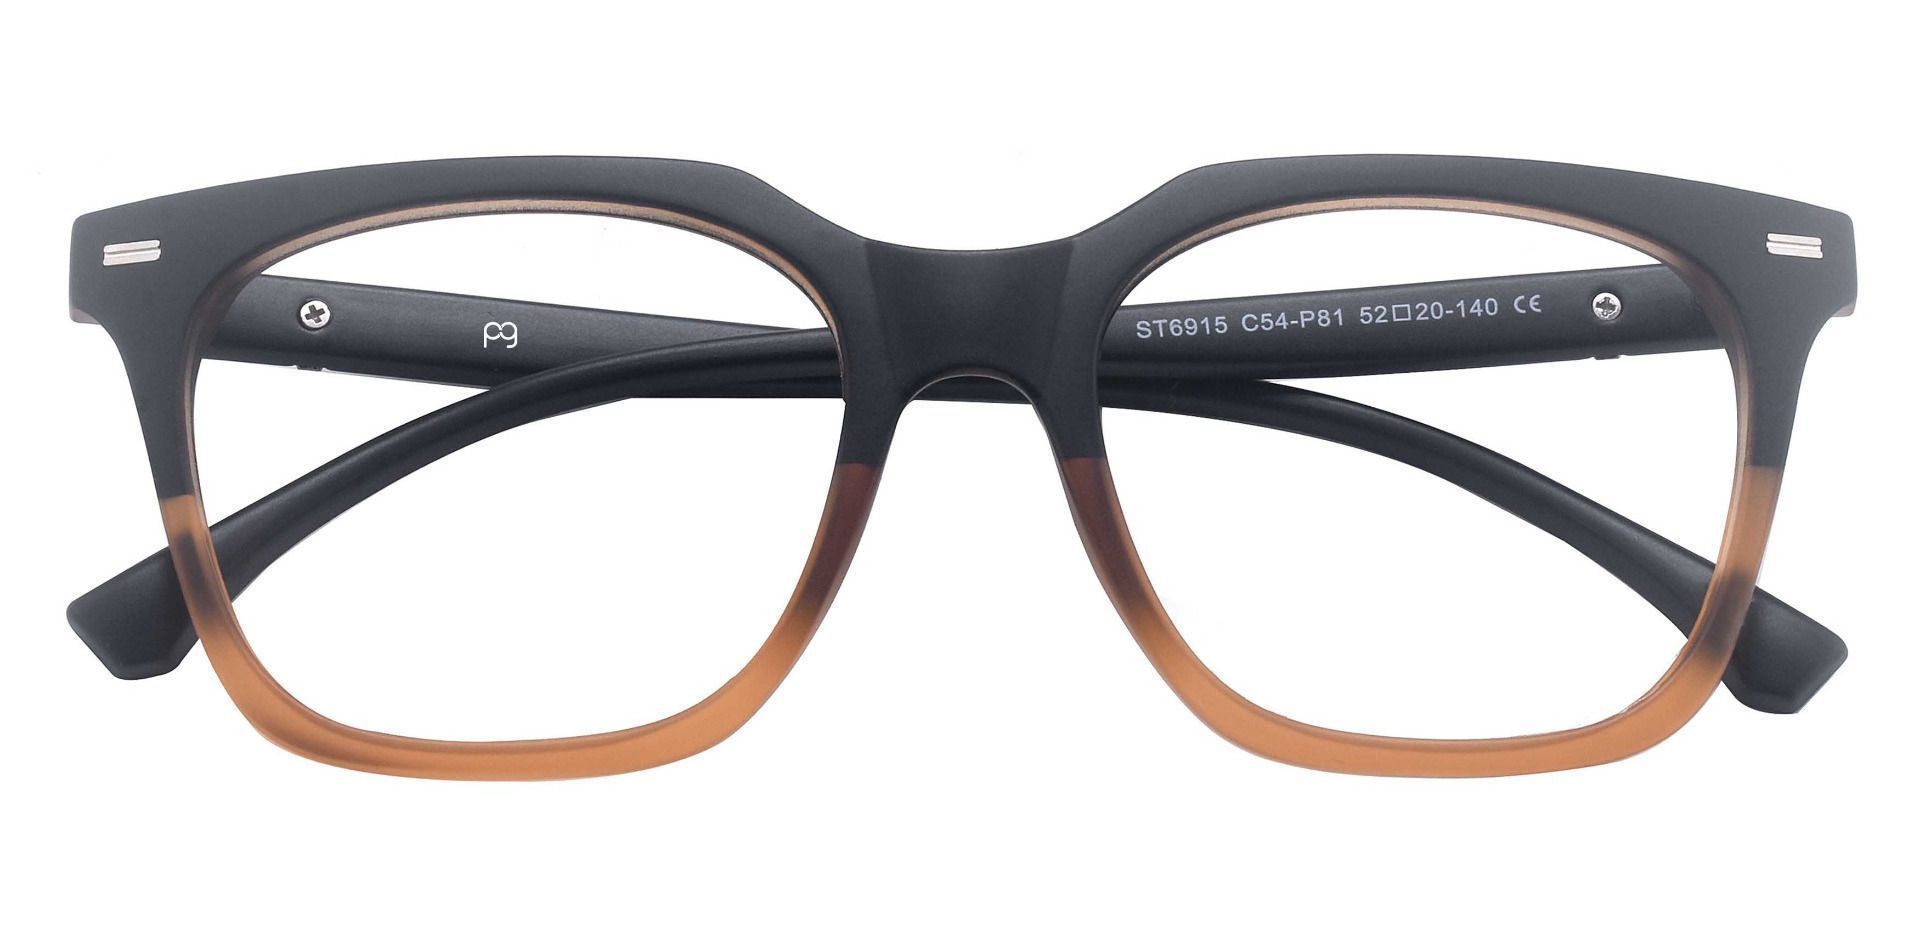 Klein Square Prescription Glasses - Brown